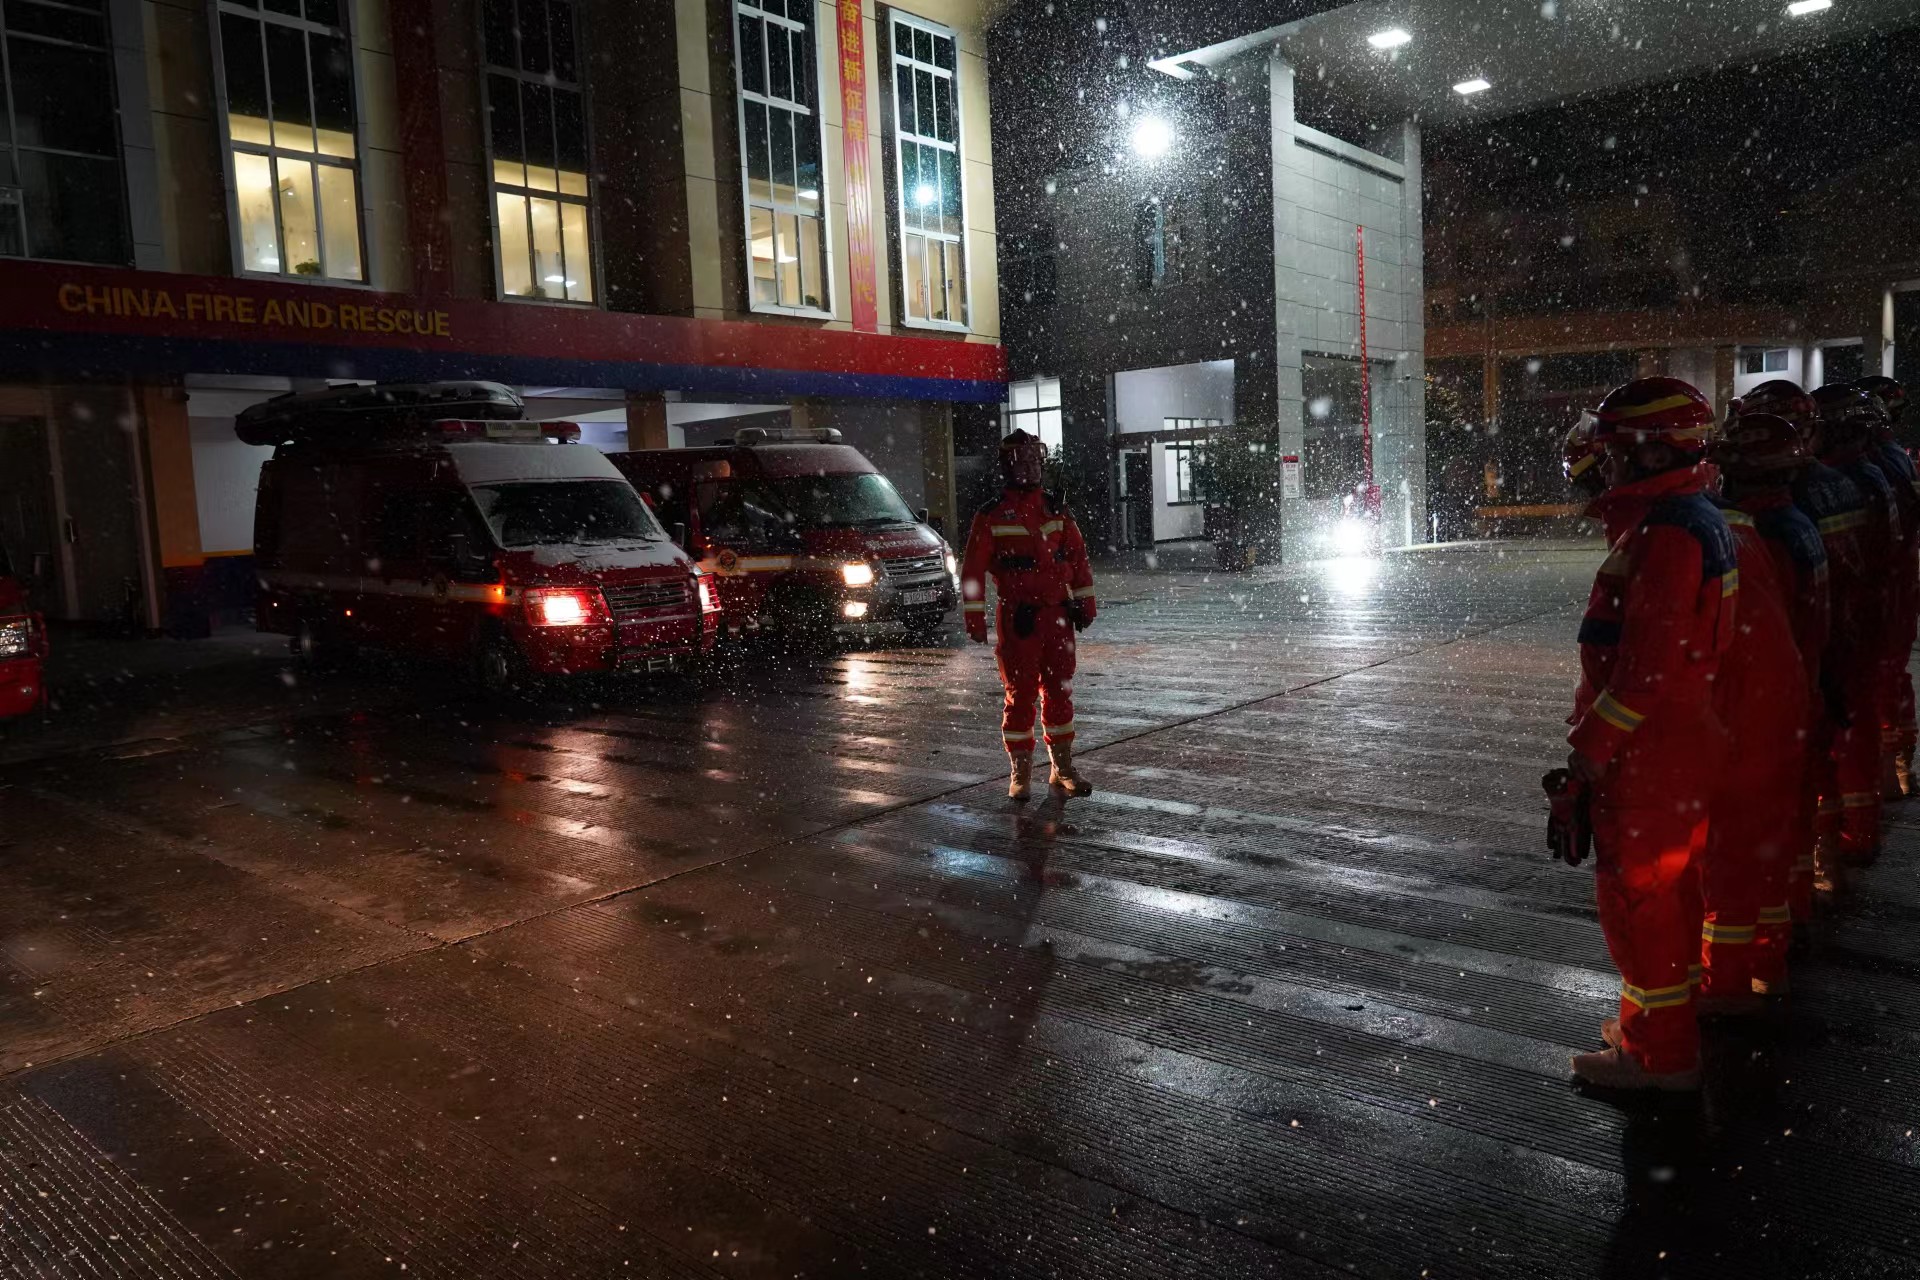 昭通市消防救援支队紧急出动赶赴现场开展救援。昭通市消防救援支队供图